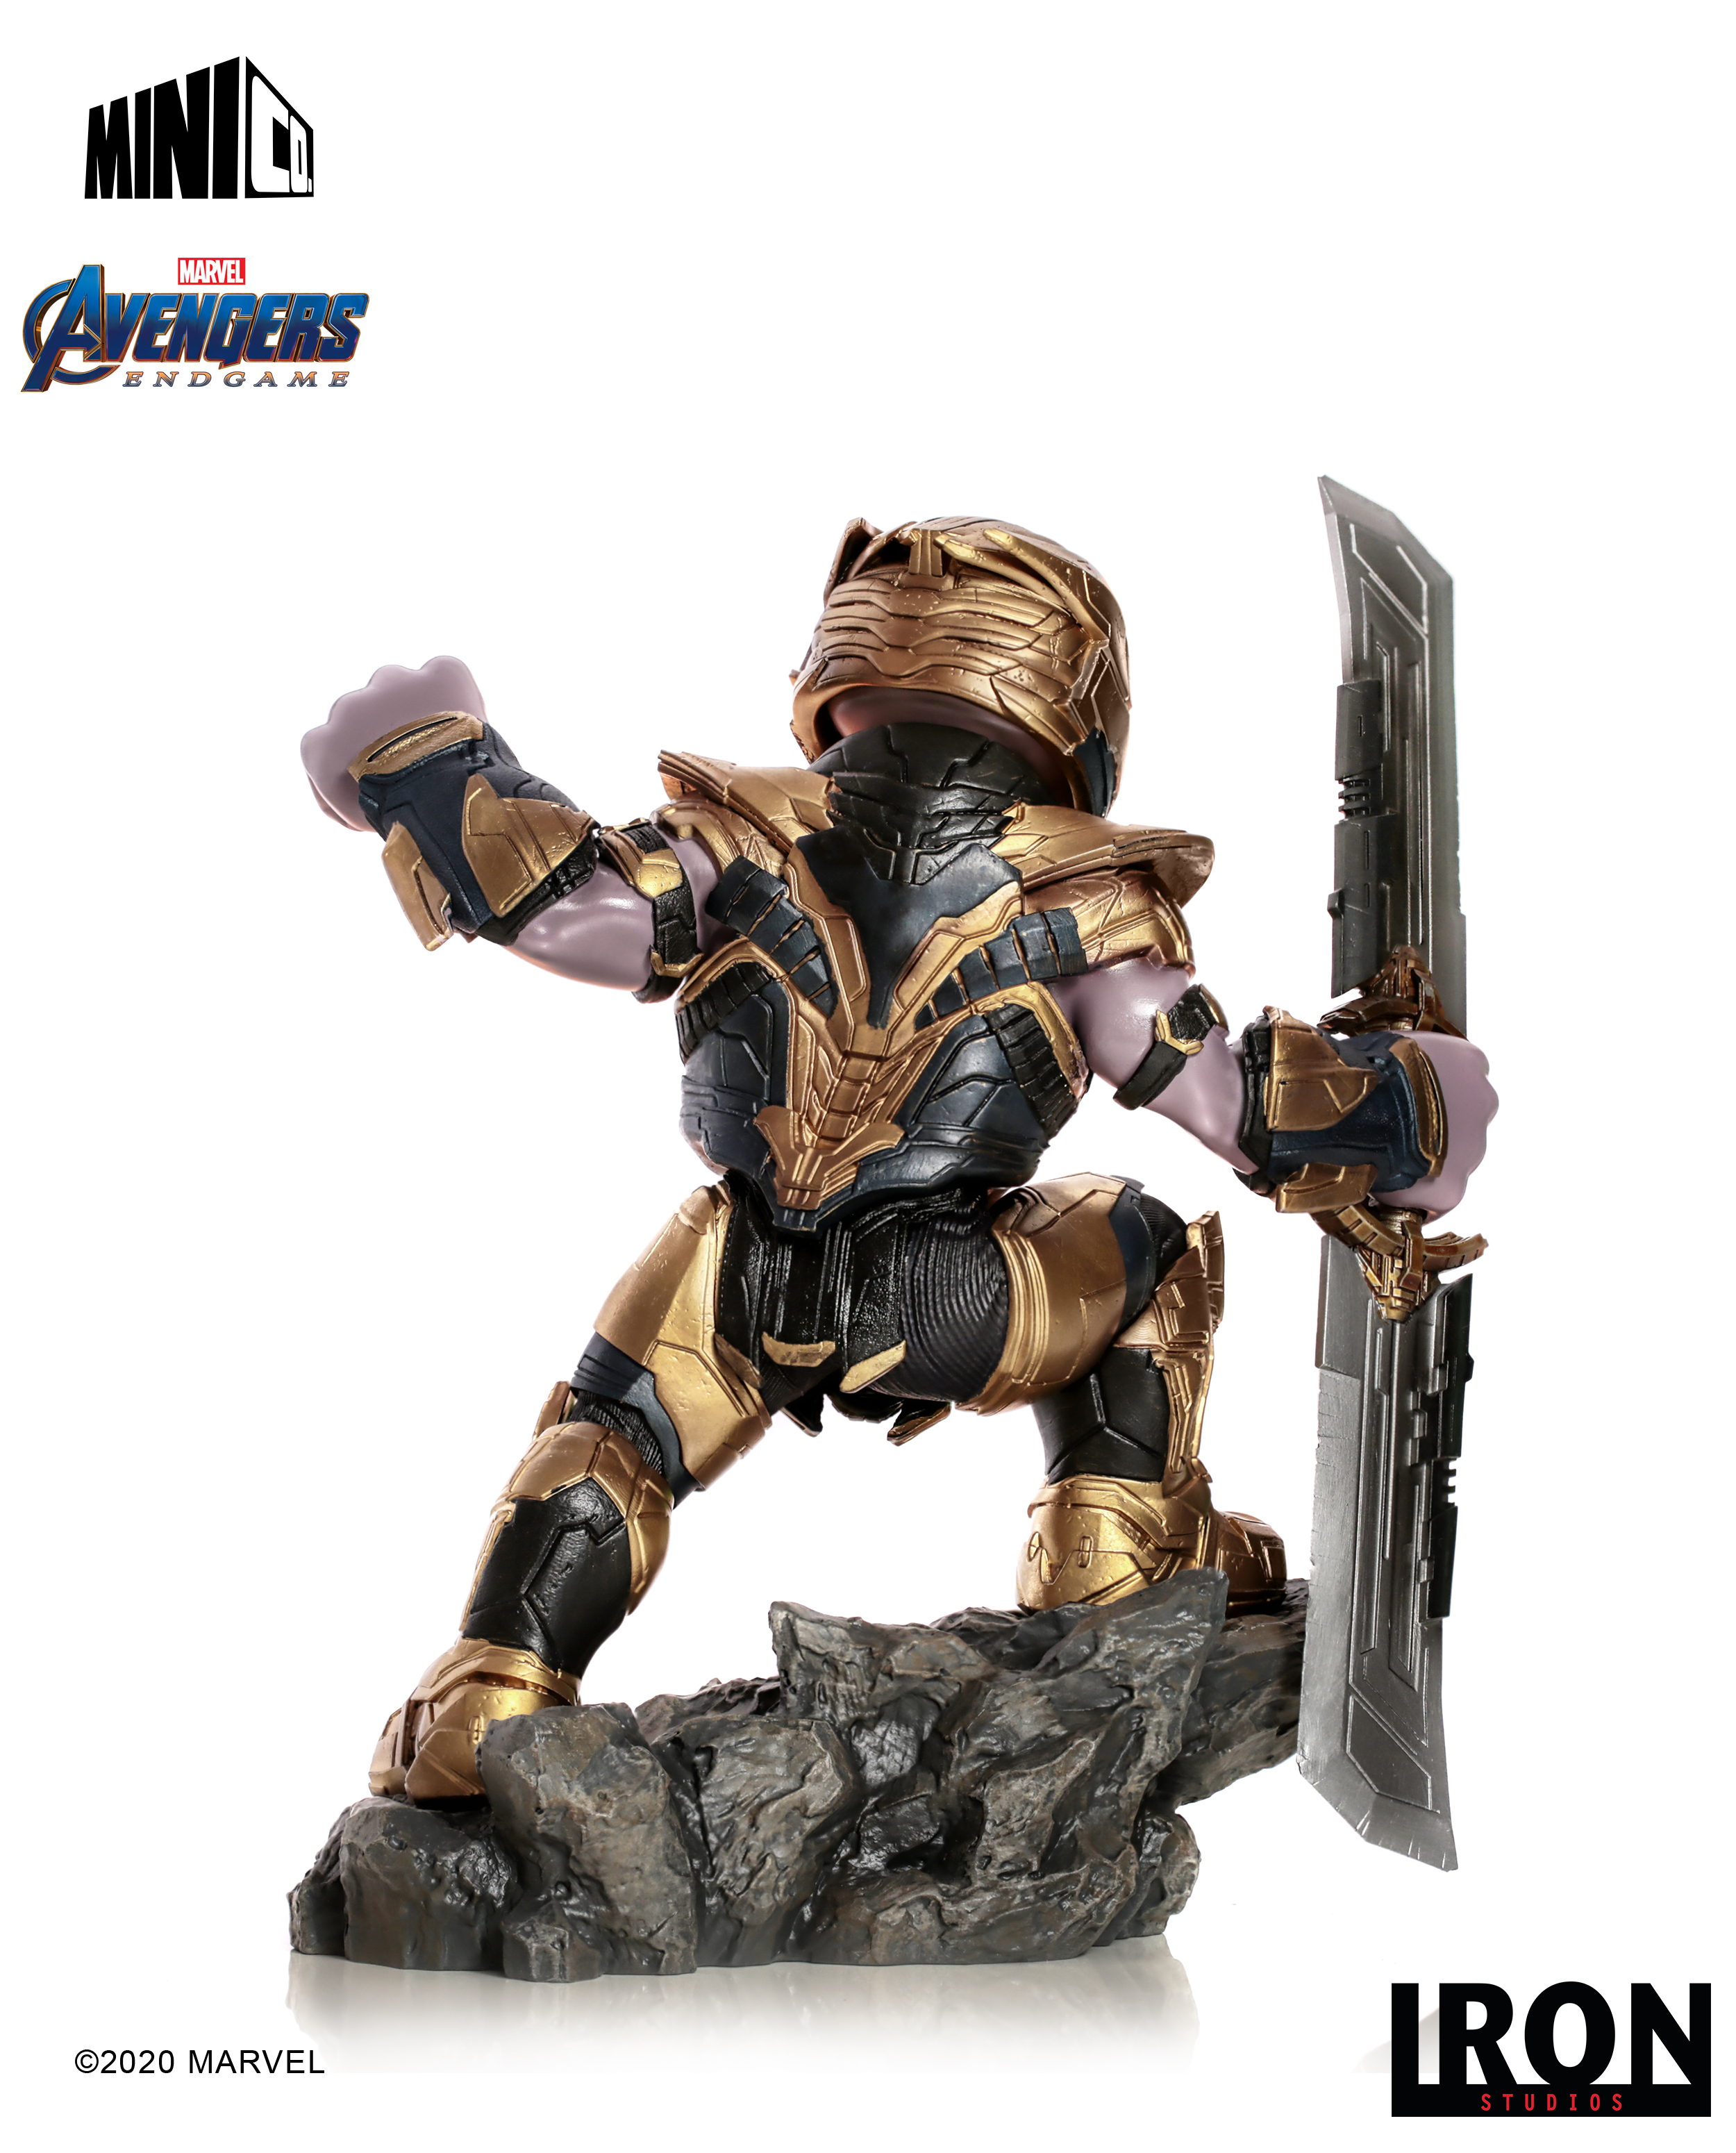 IRON STUDIOS Endgame figur Minico & - Thanos Studios Avengers: Figur Iron